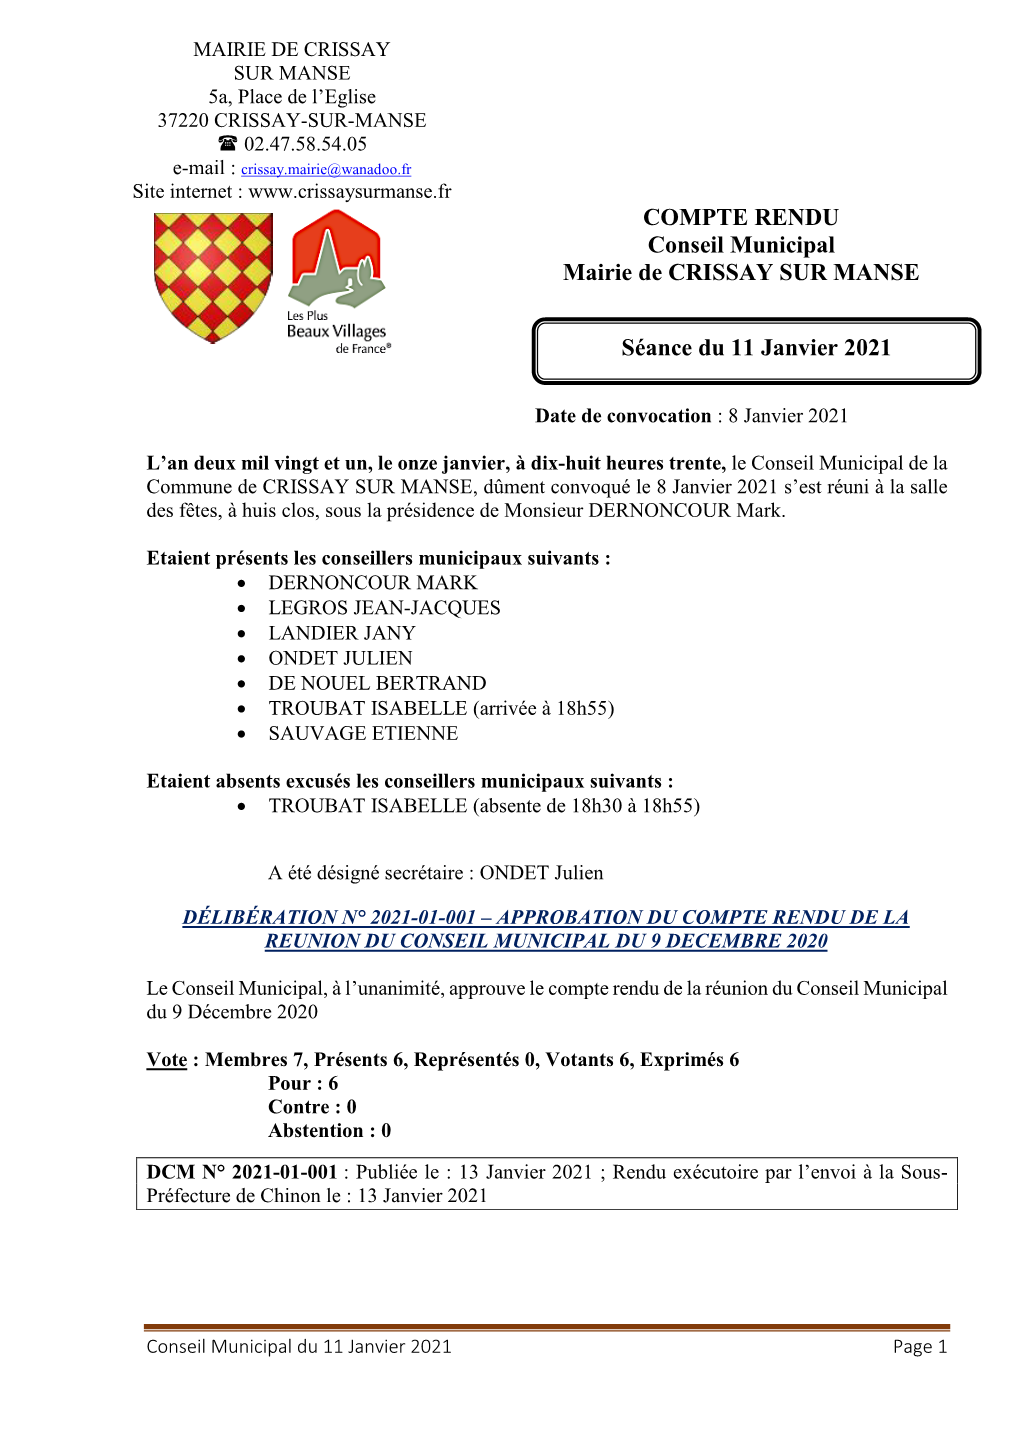 COMPTE RENDU Conseil Municipal Mairie De CRISSAY SUR MANSE